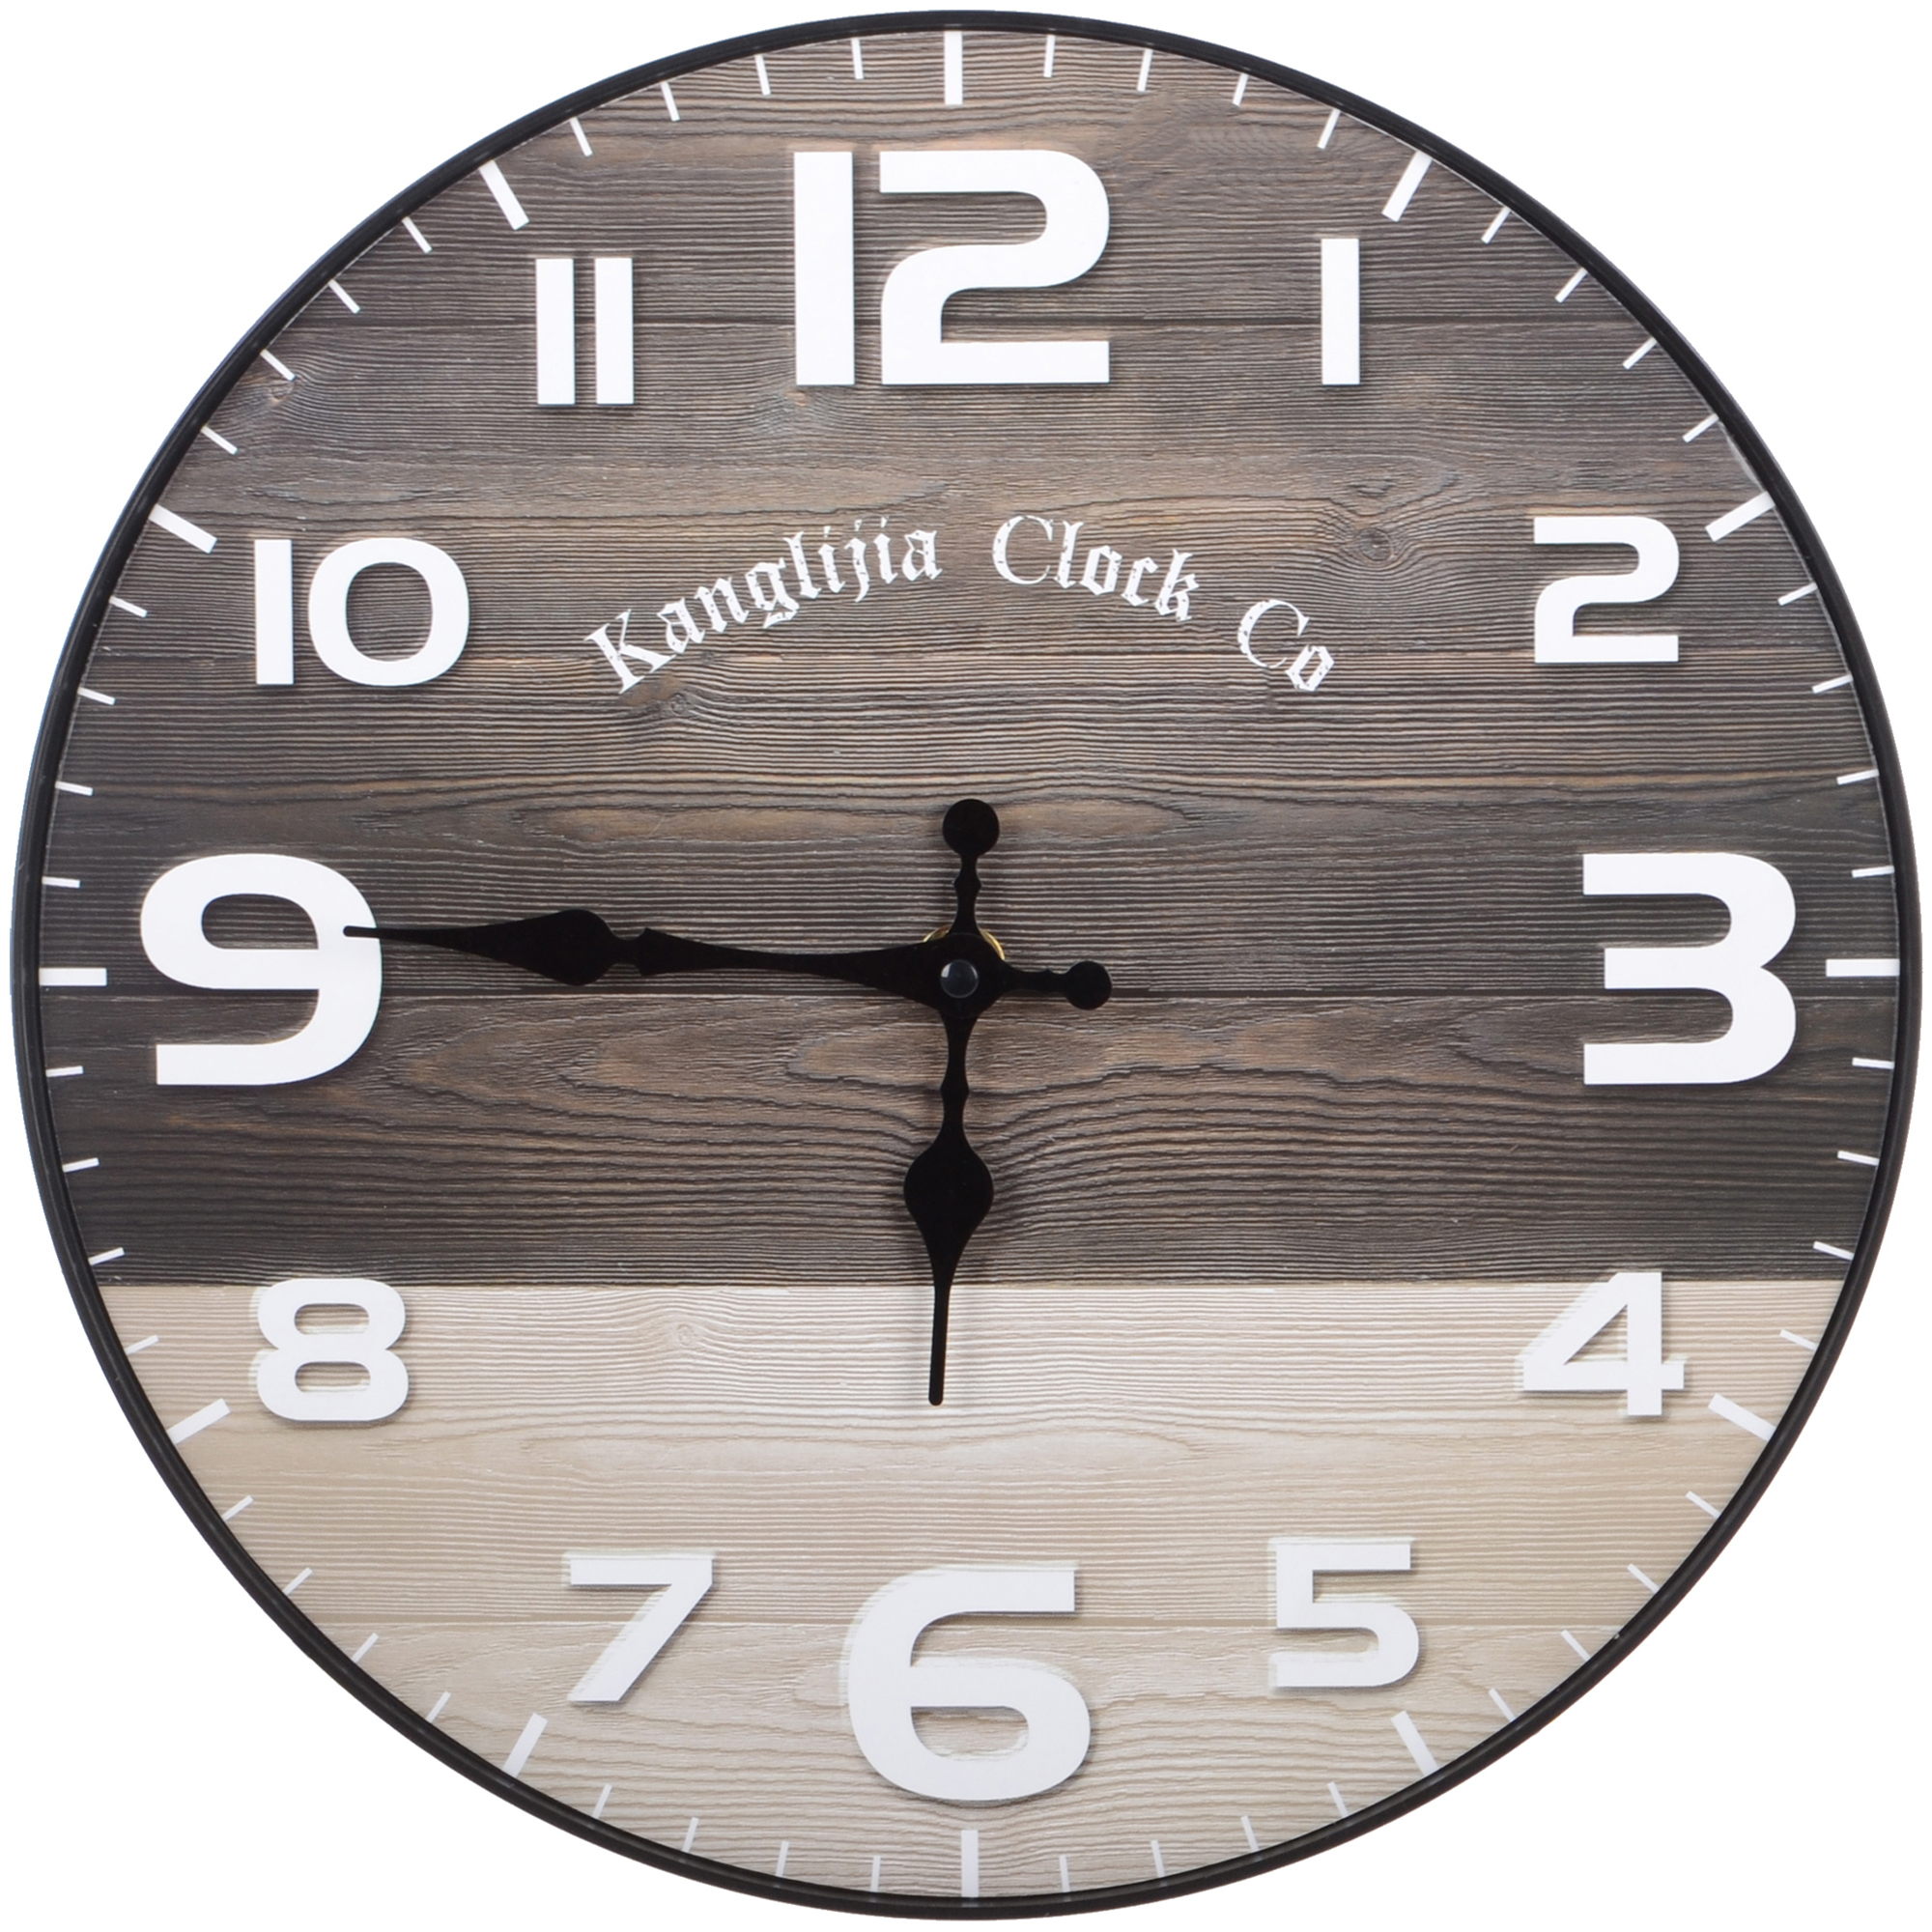 Часы настенные Kanglijia Clock коричневые 29,5х29,5х3,5 см часы настольные perfeo snuz чёрный